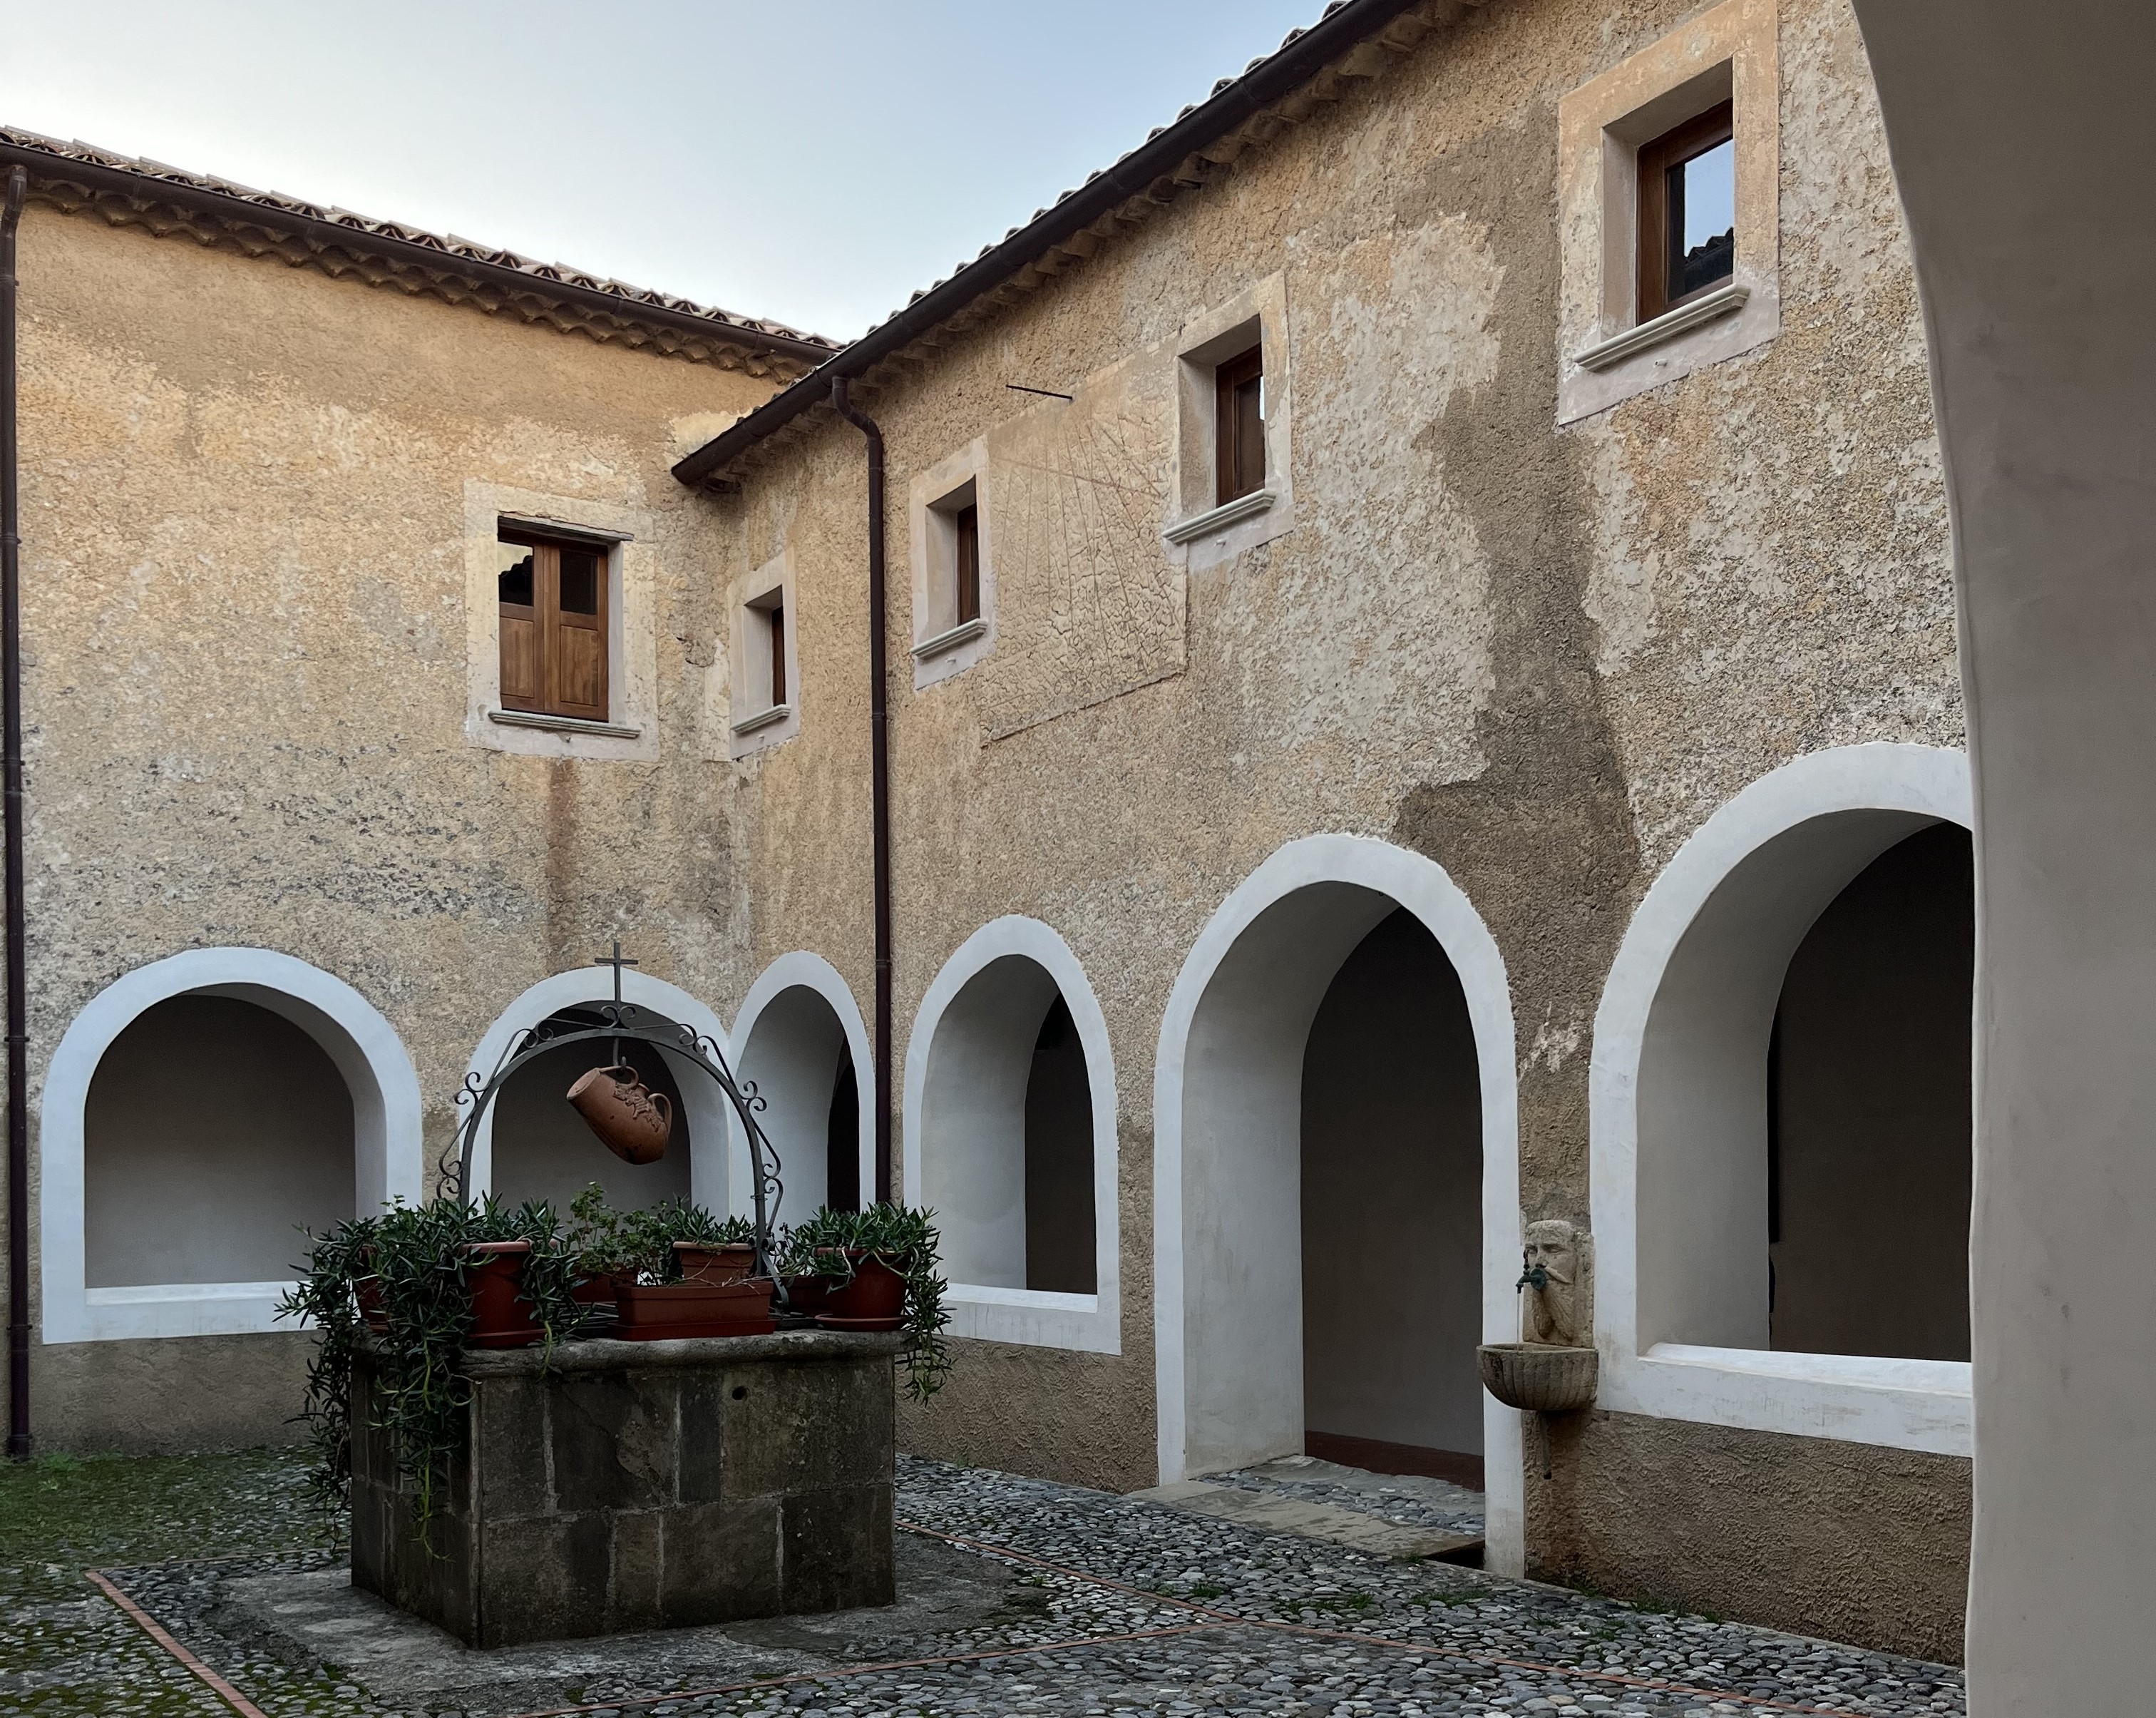 Convento dei Cappuccini Belvedere Marittimo